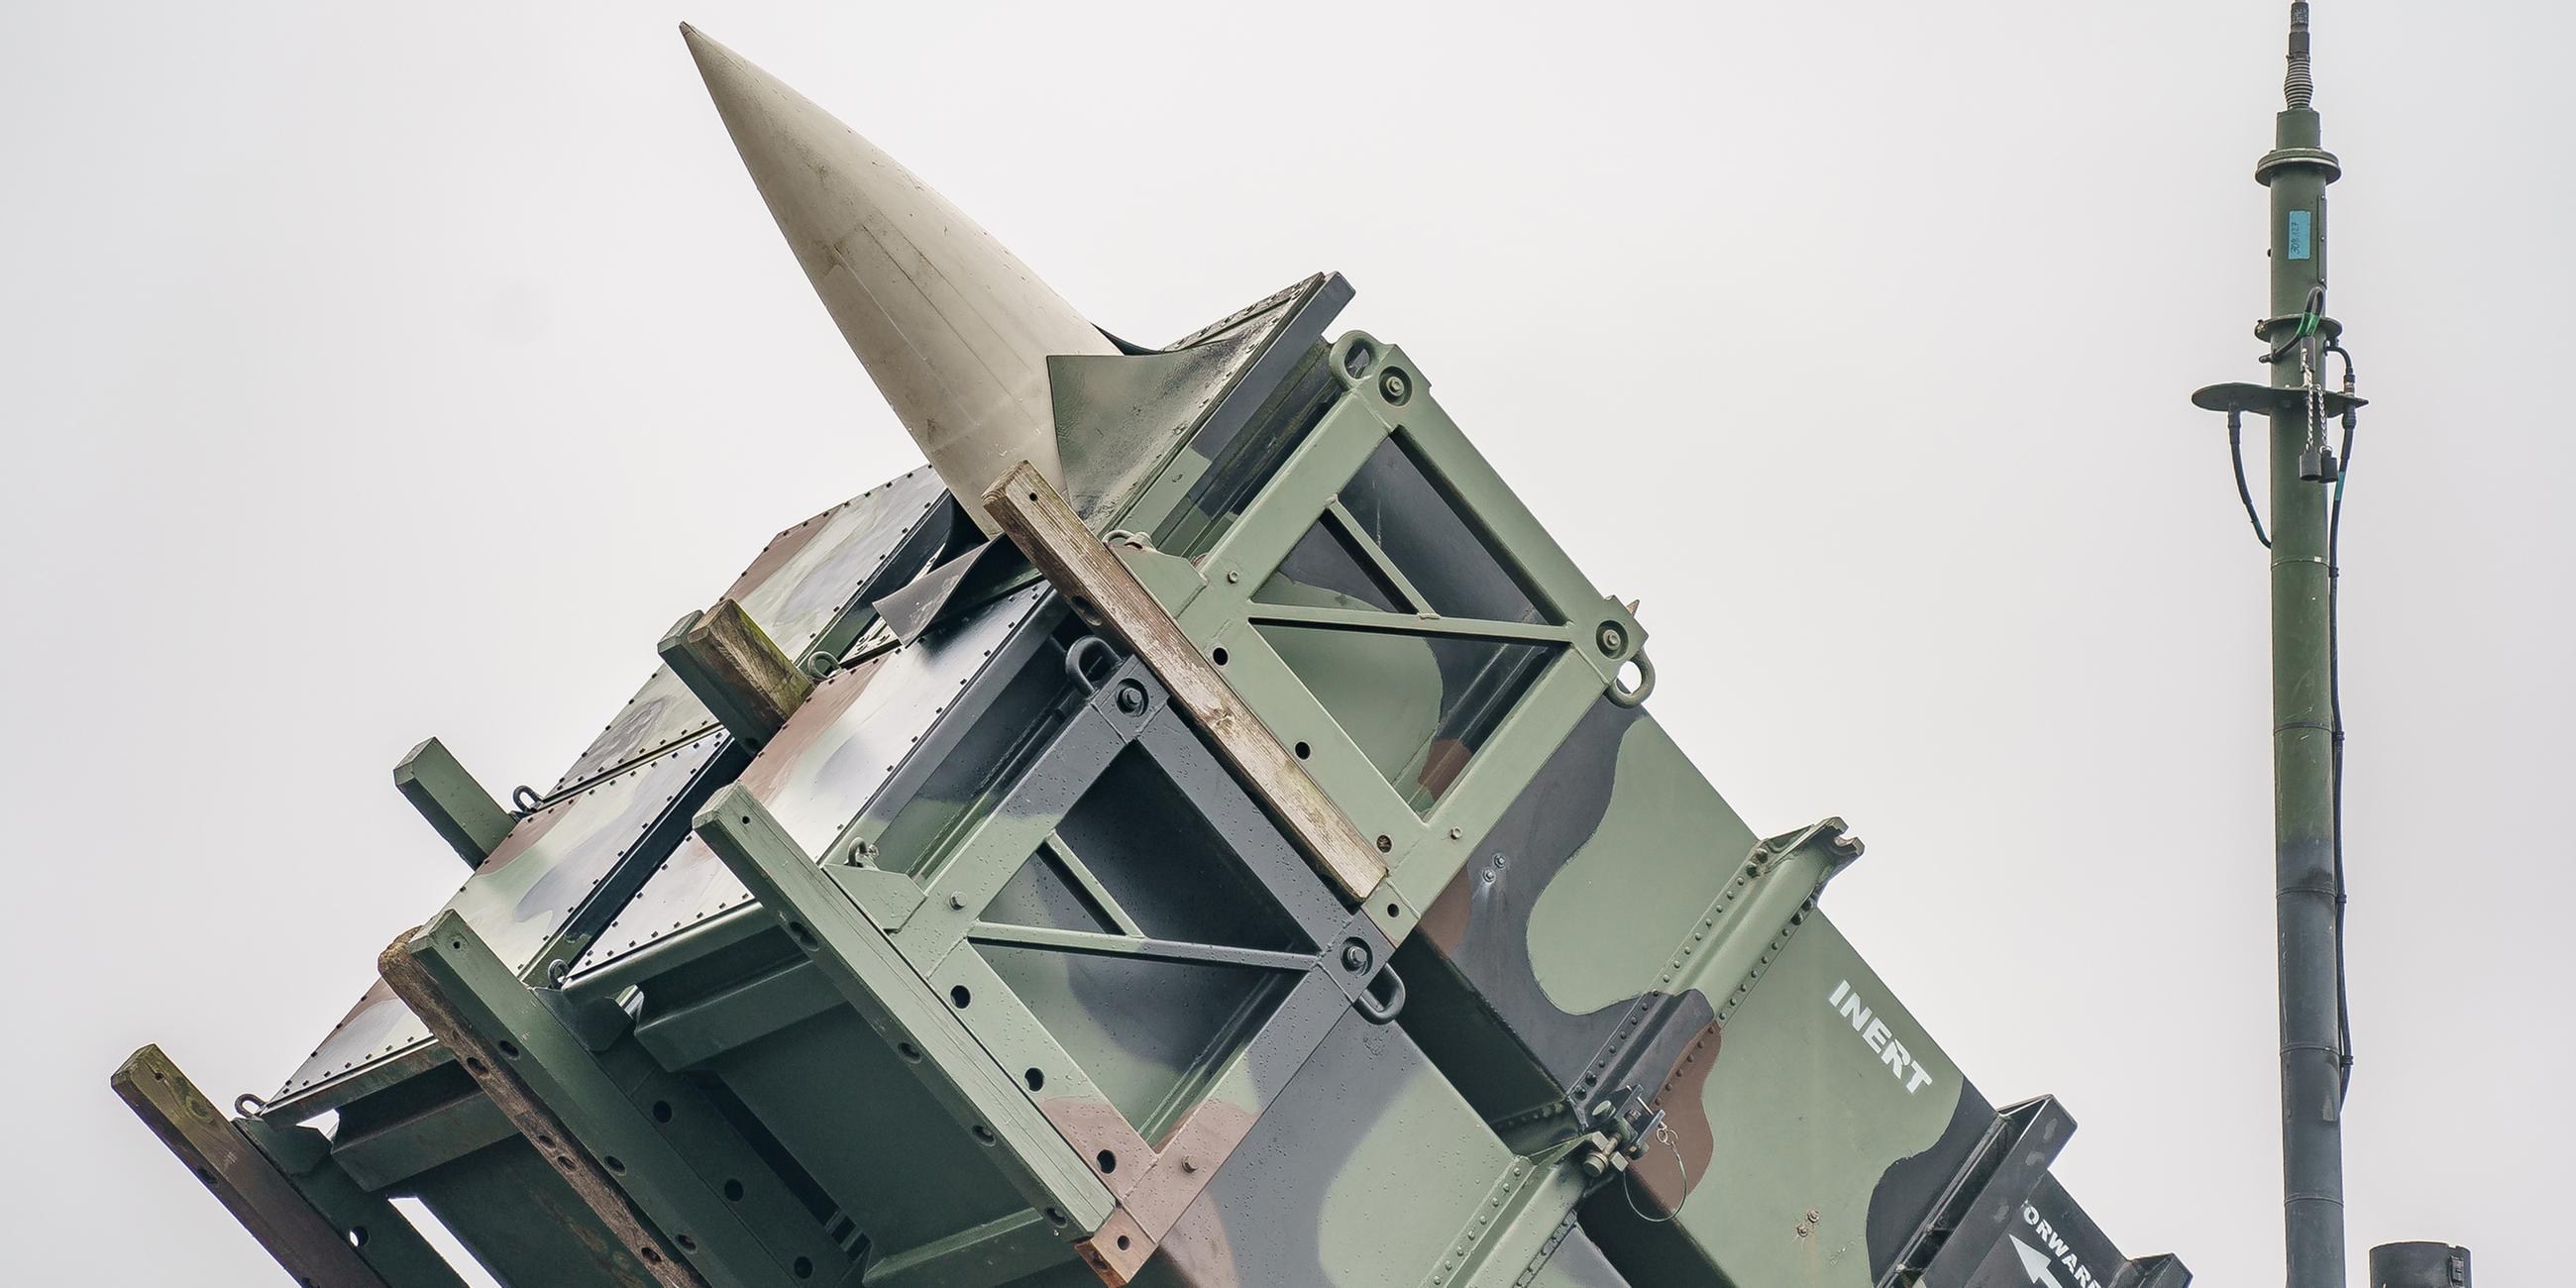 Archiv: Ein gefechtsbereites Flugabwehrraketensystem vom Typ "Patriot"